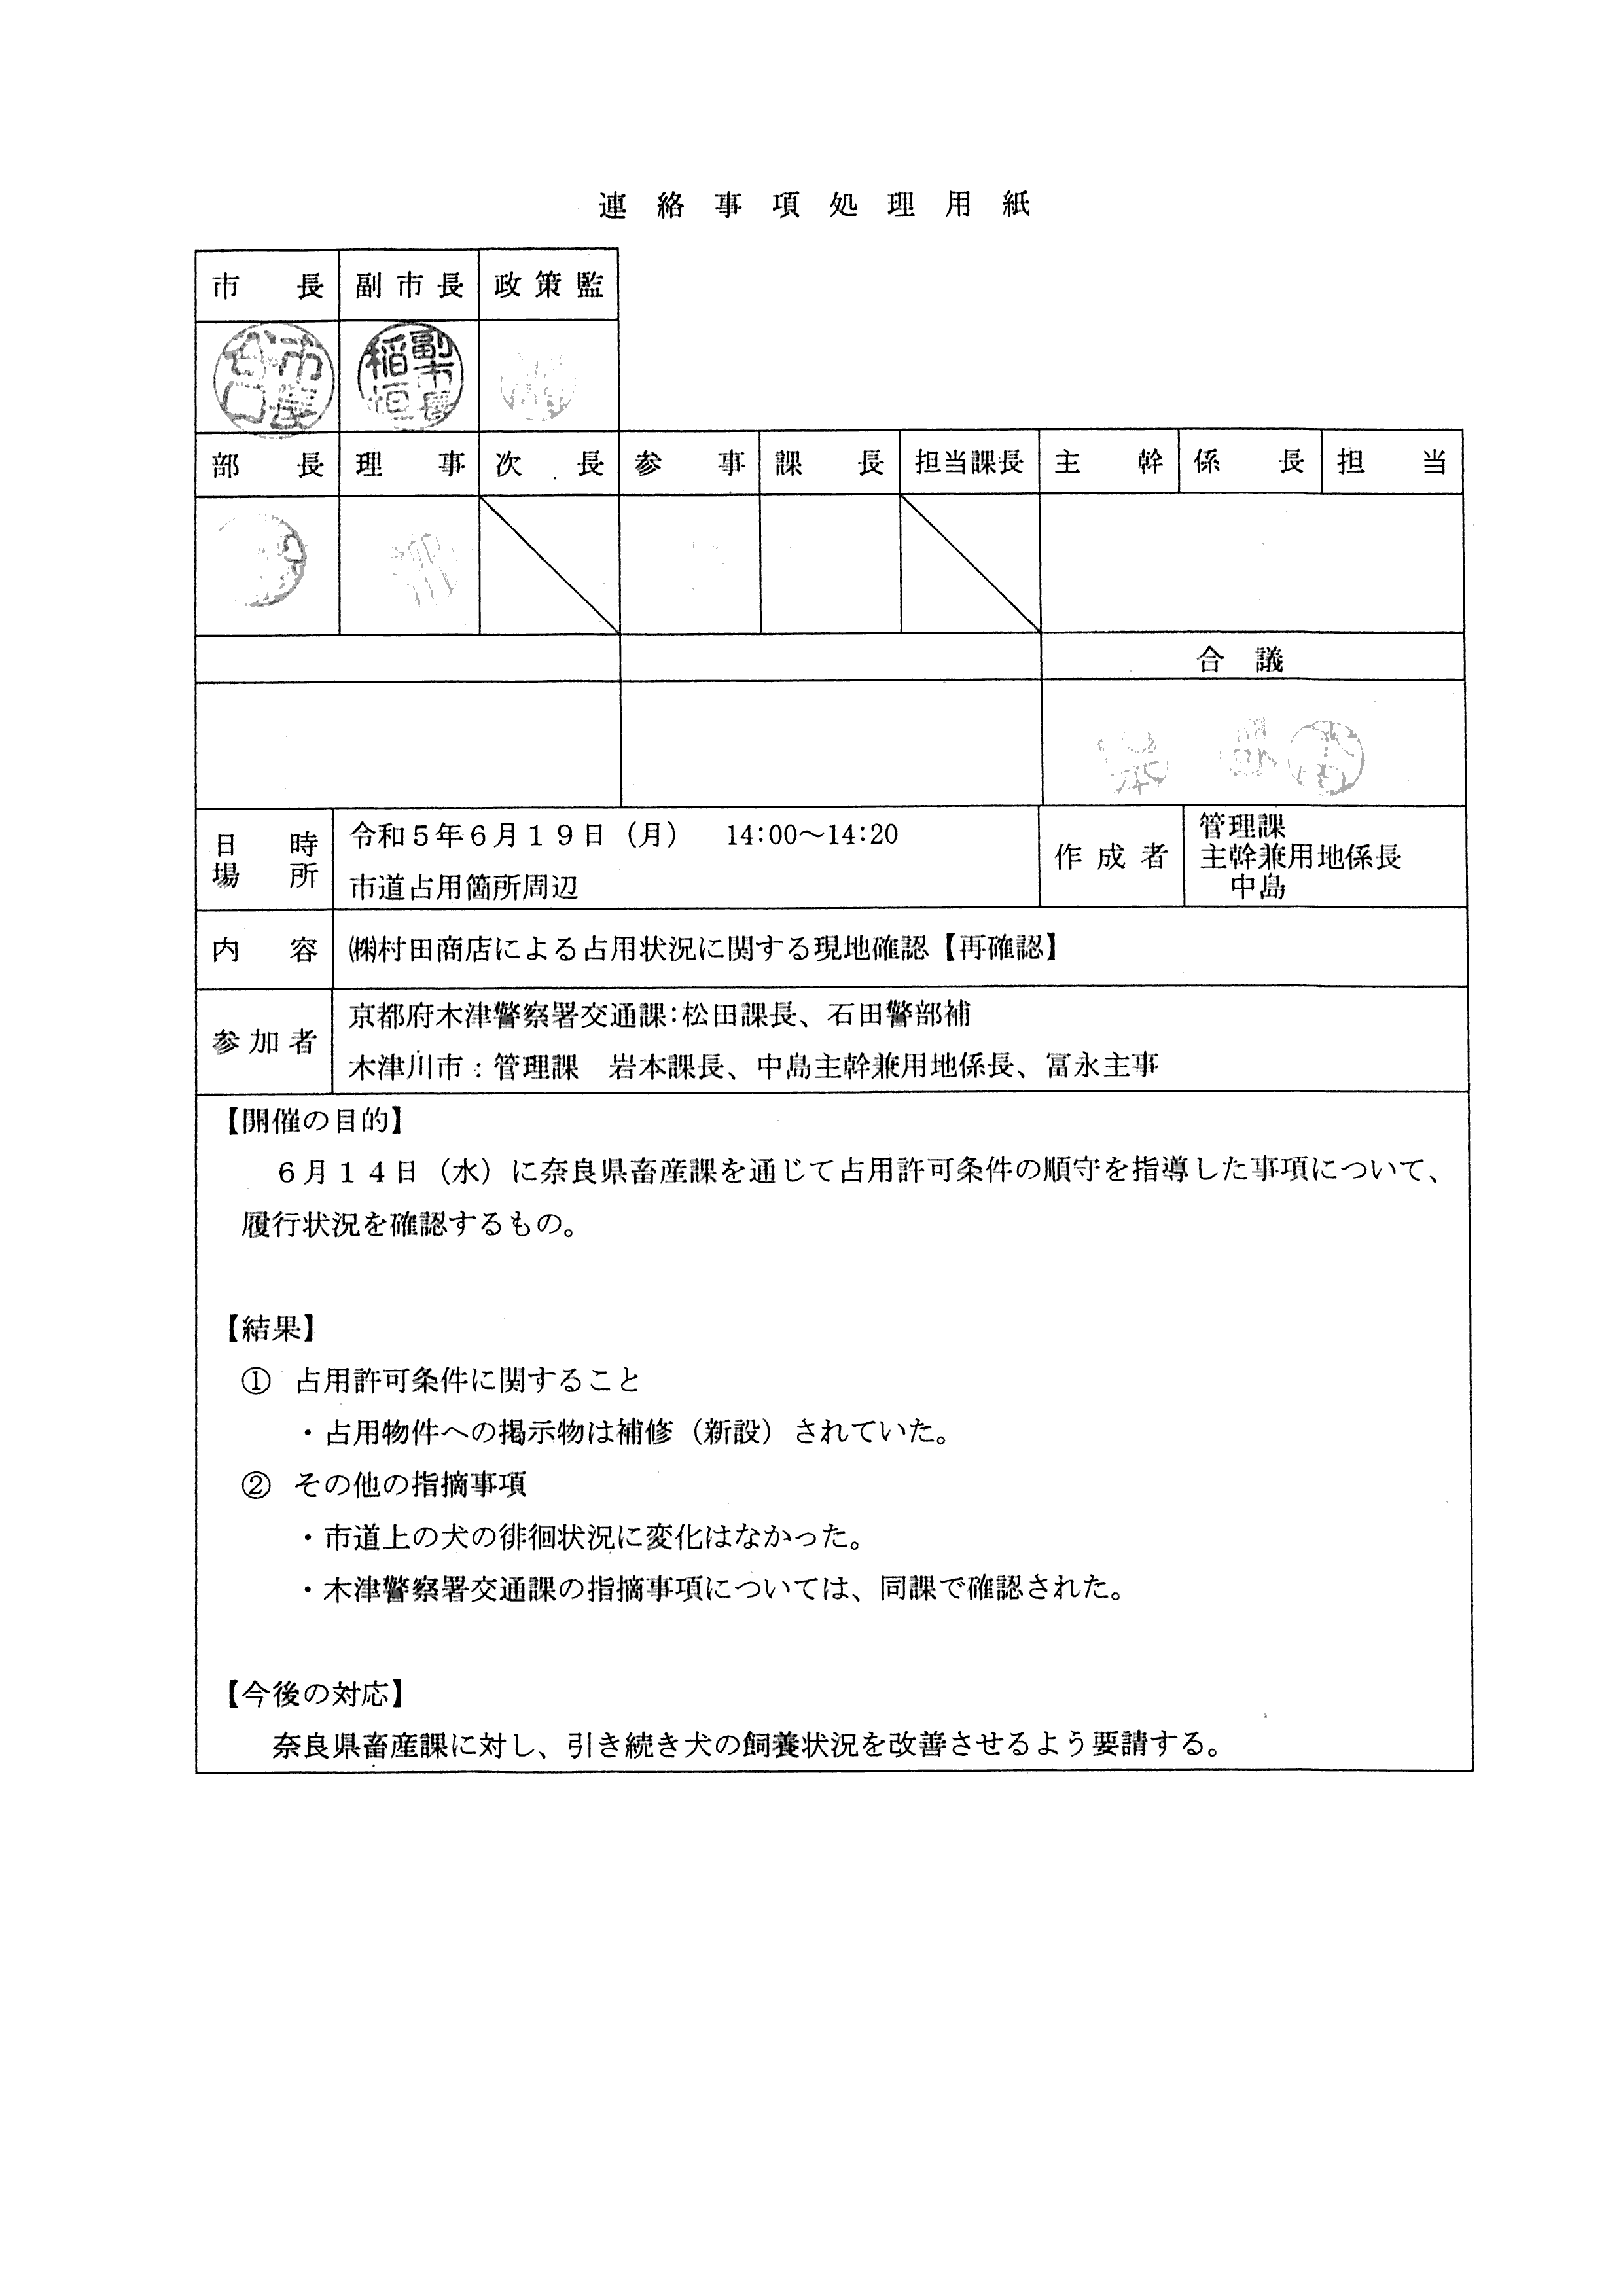 令和5(2023)年6月19日-(株)村田商店による占用状況に関する現地確認【再確認】-01